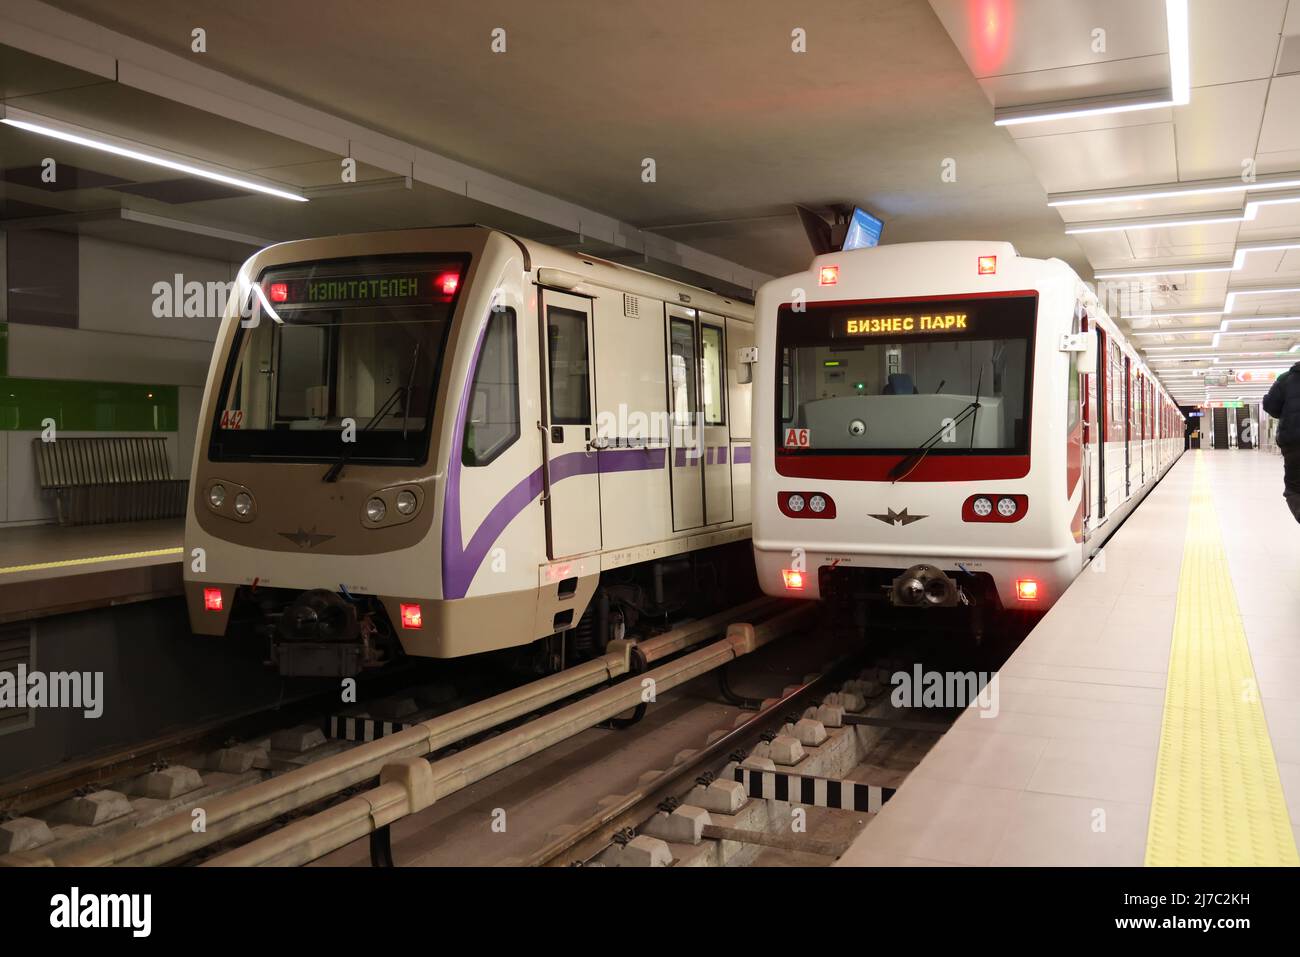 Zwei verschiedene U-Bahn-Züge, die in Russland hergestellt werden (die gleichen wie z.B. in der Moskauer U-Bahn), in der Business Park Station der U-Bahn in Sofia, Bulgarien Stockfoto